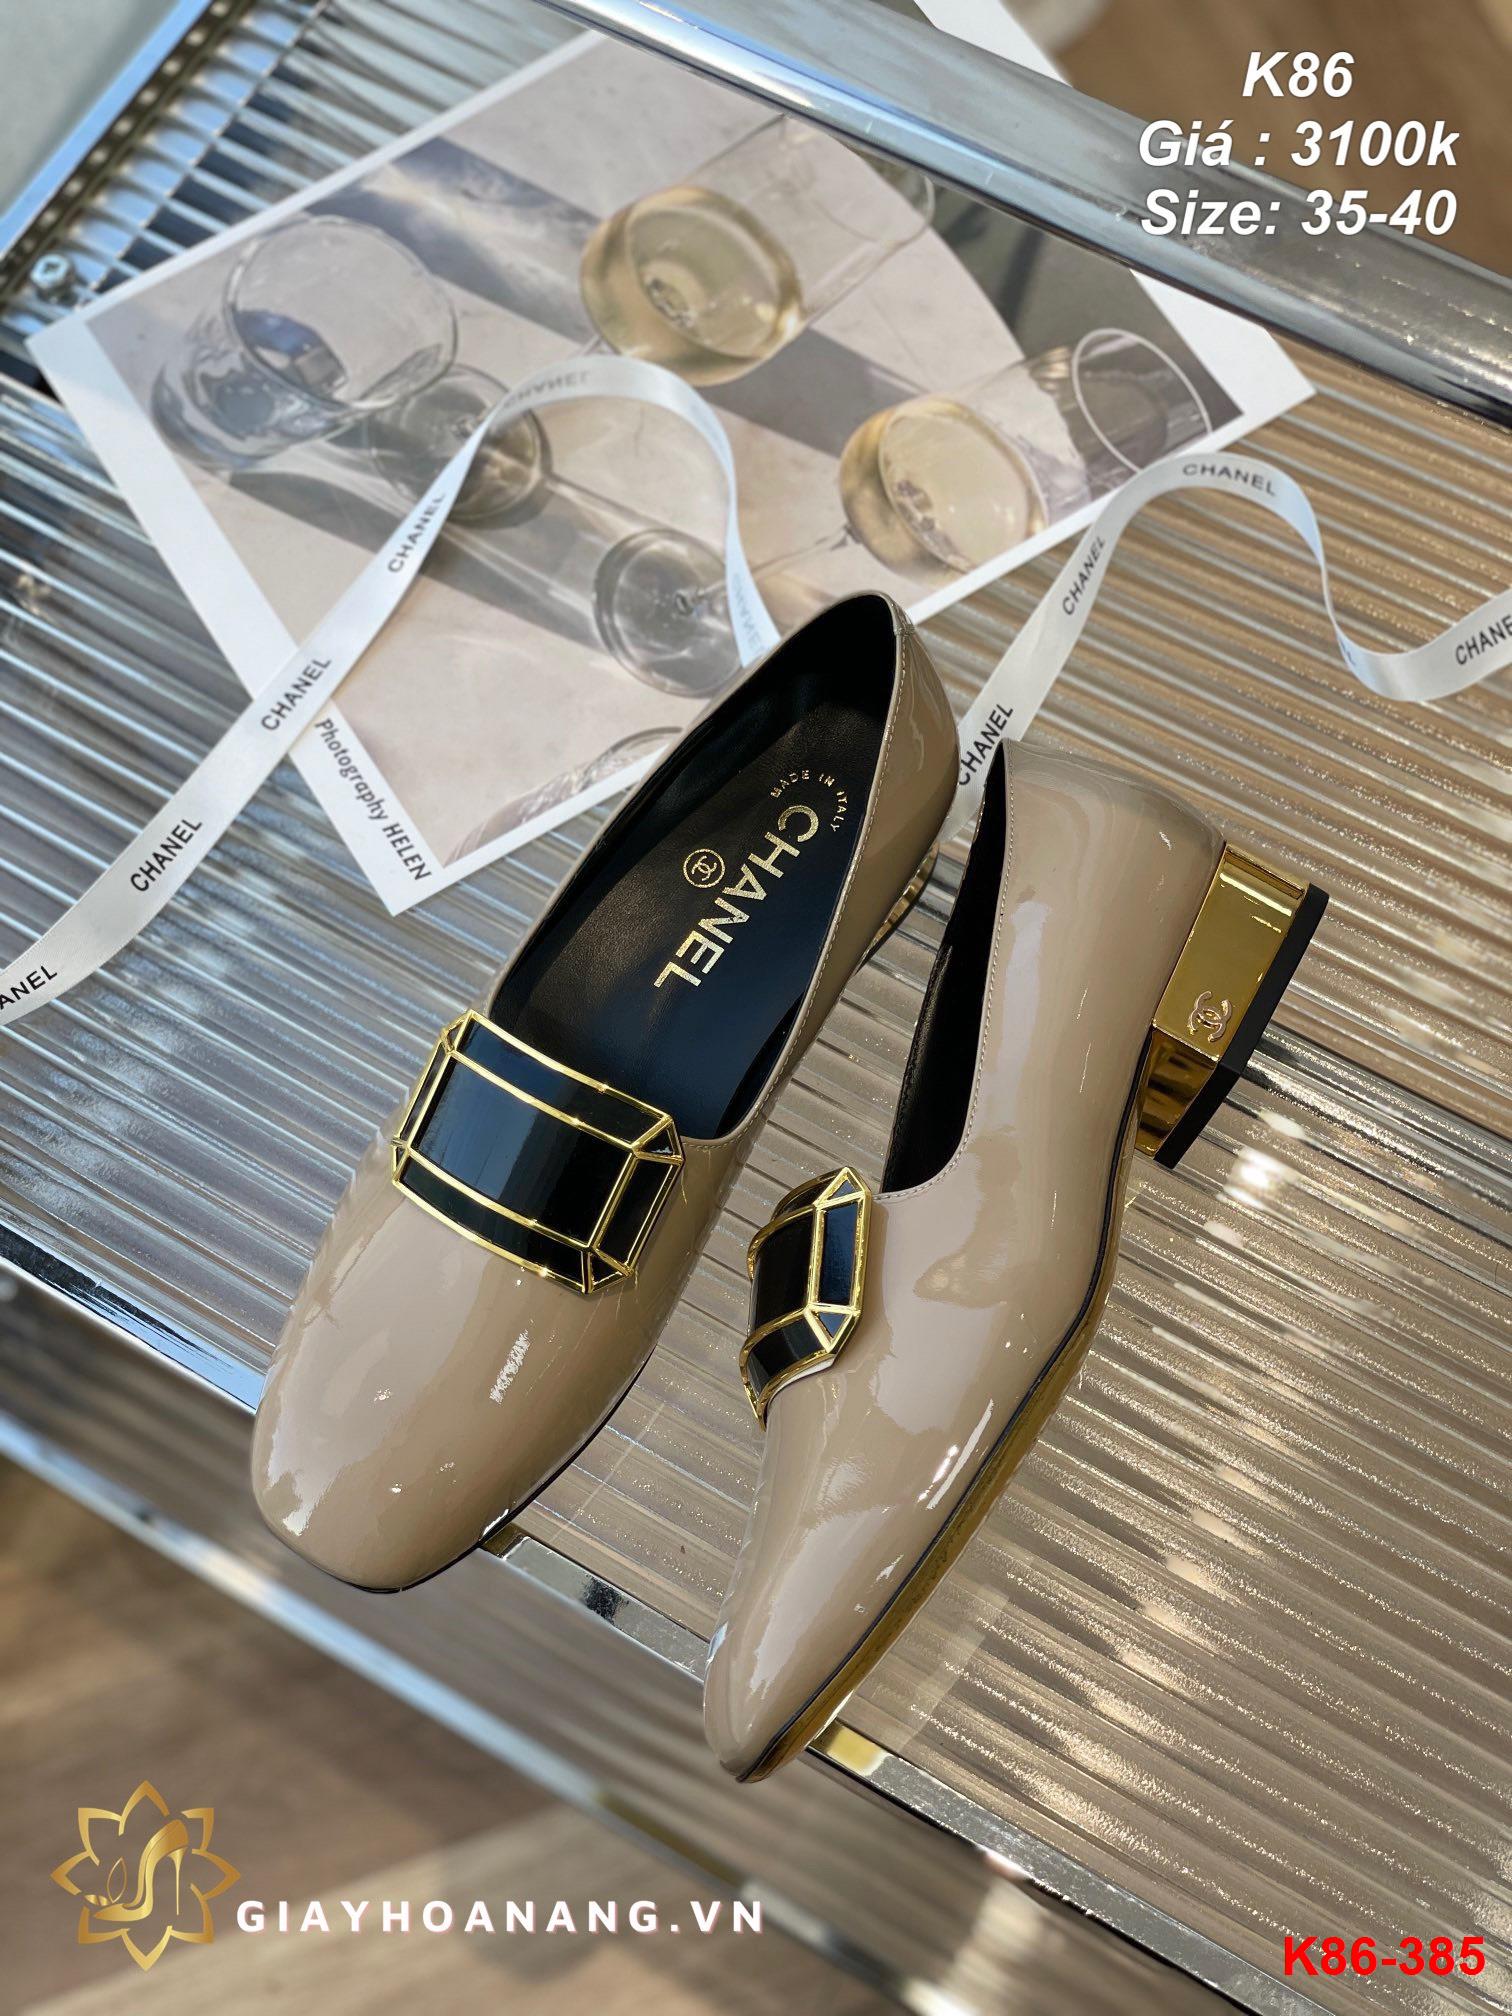 K86-385 Chanel giày lười siêu cấp